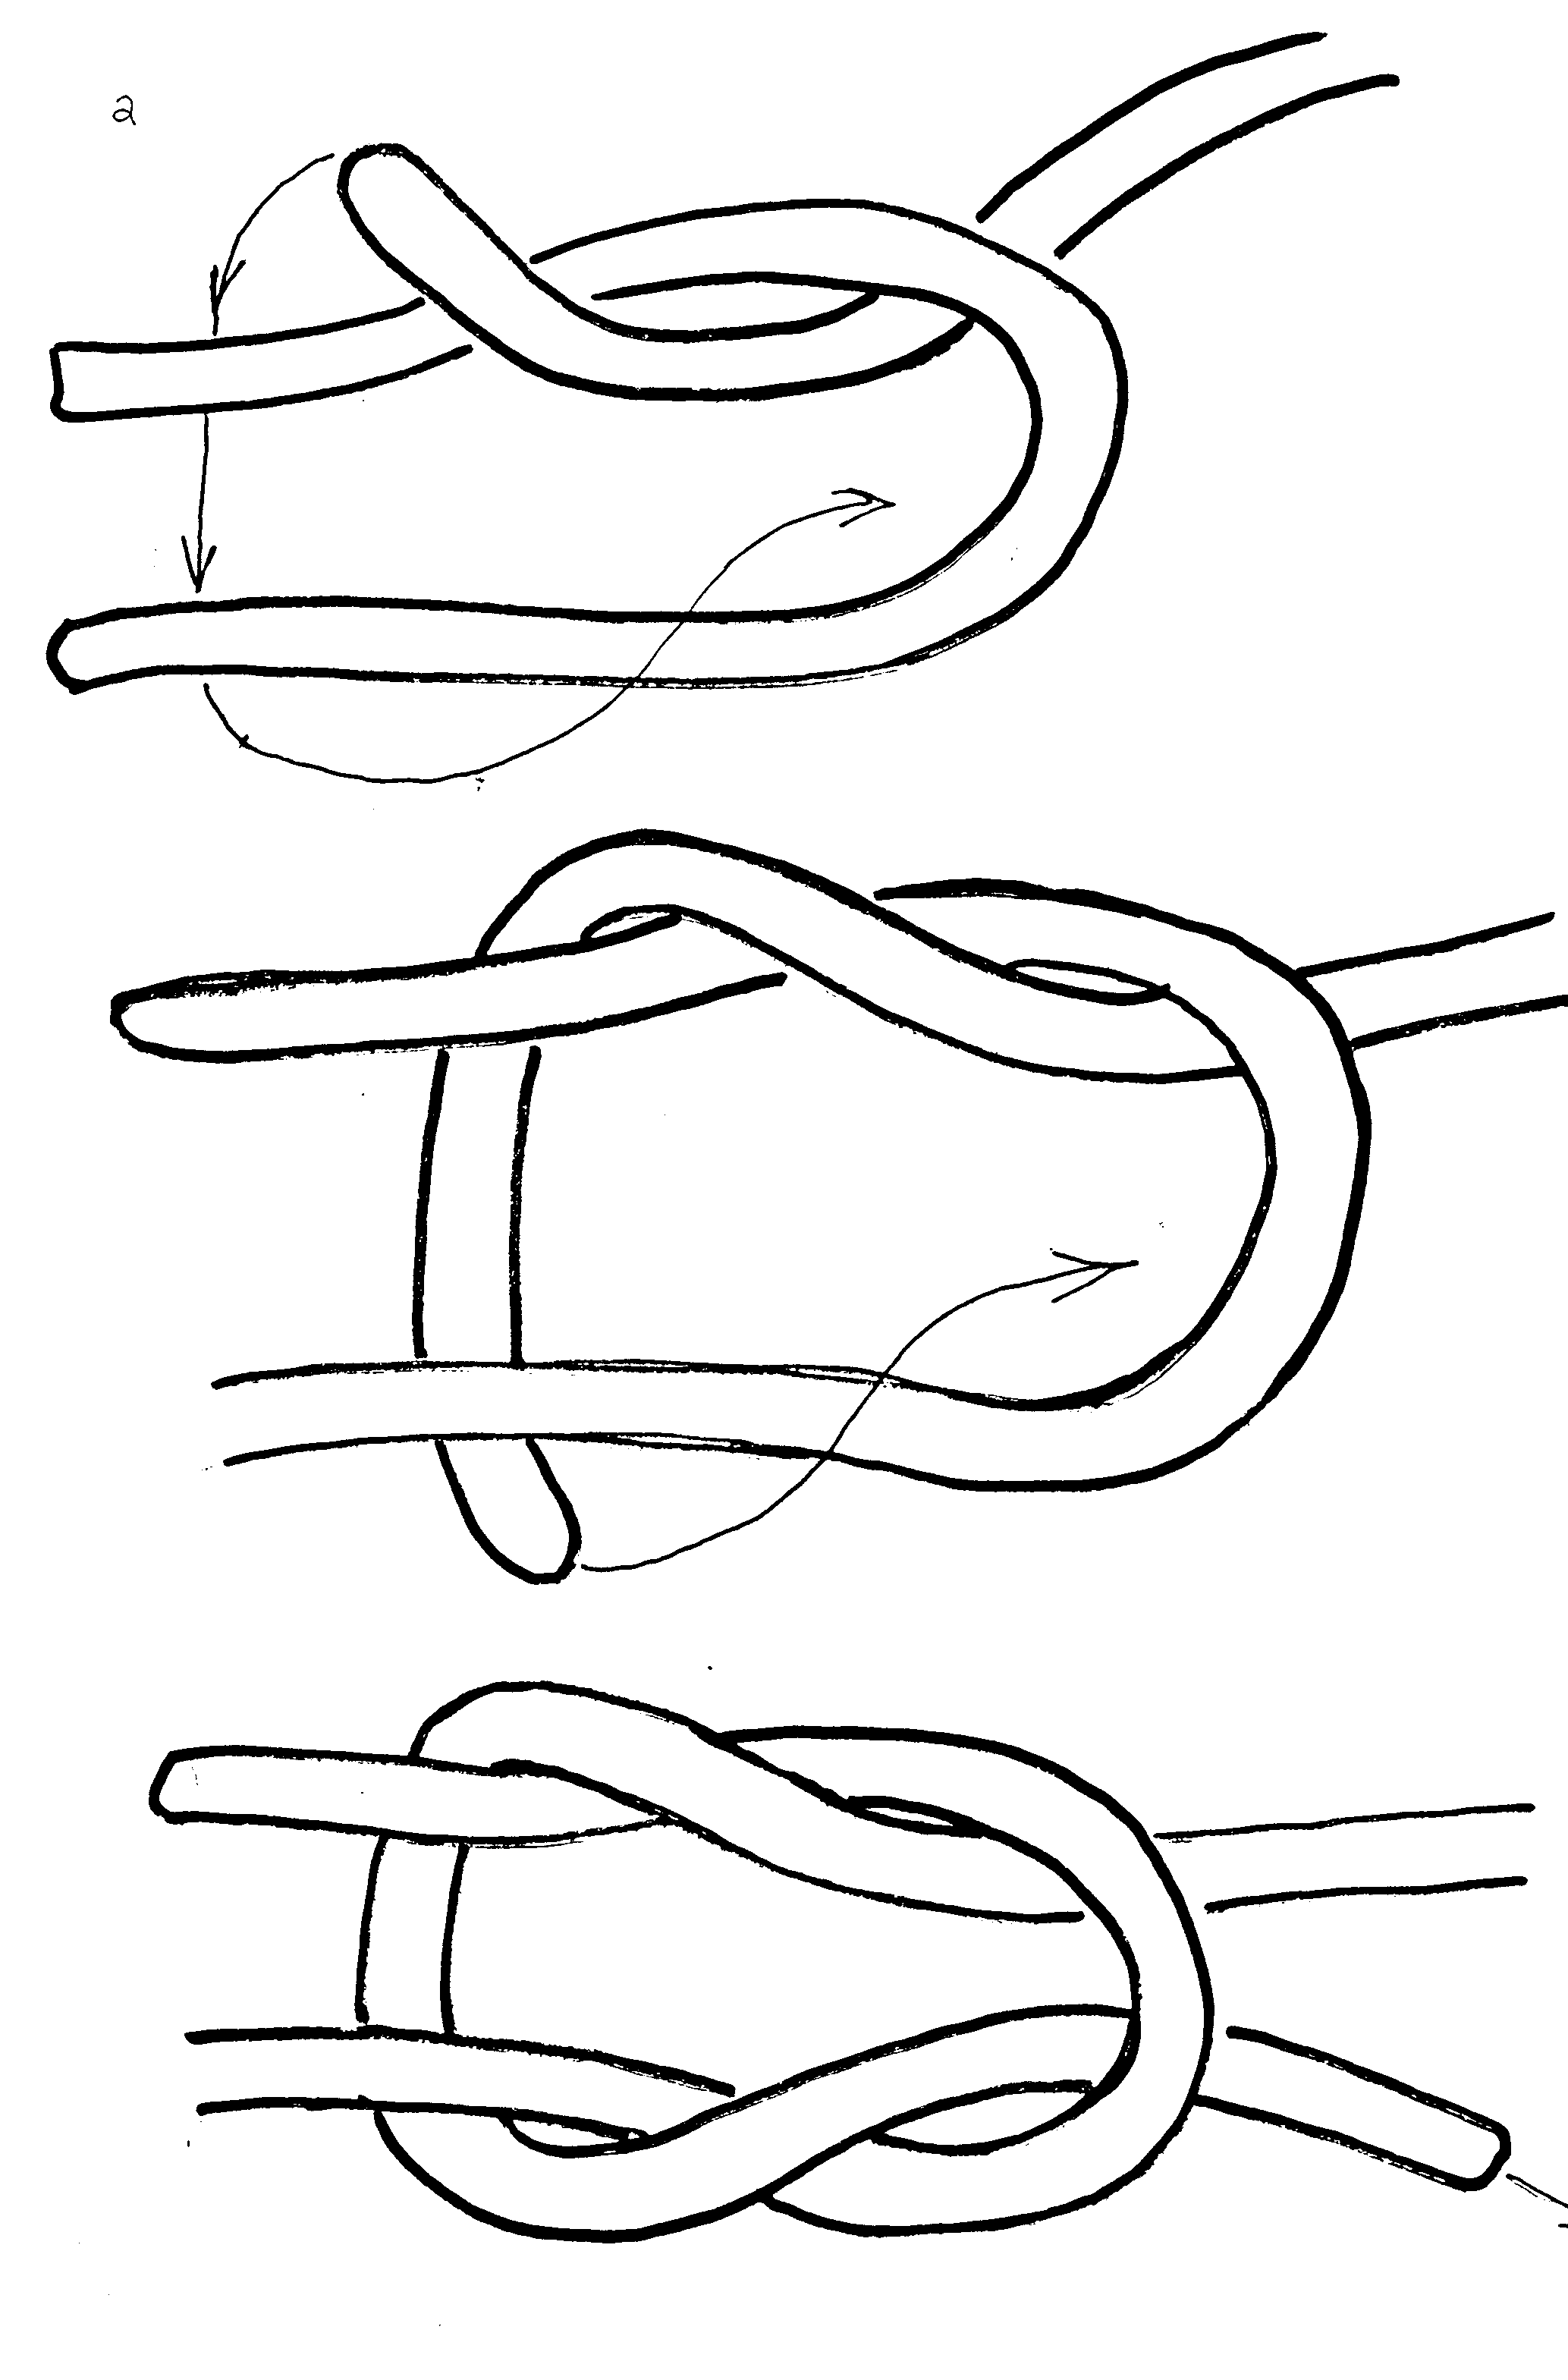 Схема завязывания морского узла. Фламандский узел схема. Как завязывать морской узел схема. Узел восьмерка швартовка. Узел поэтапно